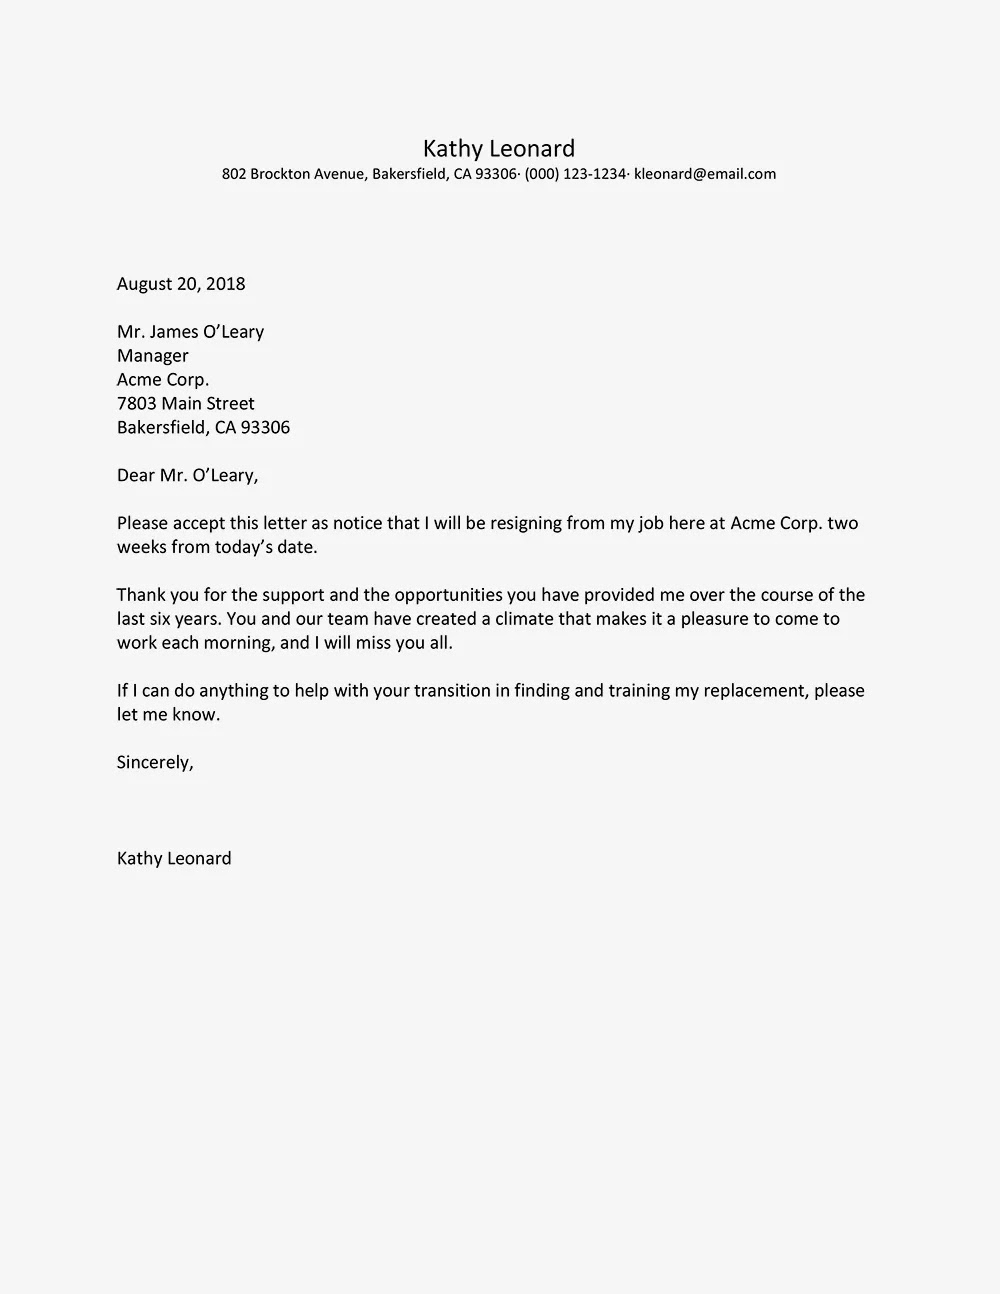 Contoh Surat Resign Bahasa Inggris Nusagates